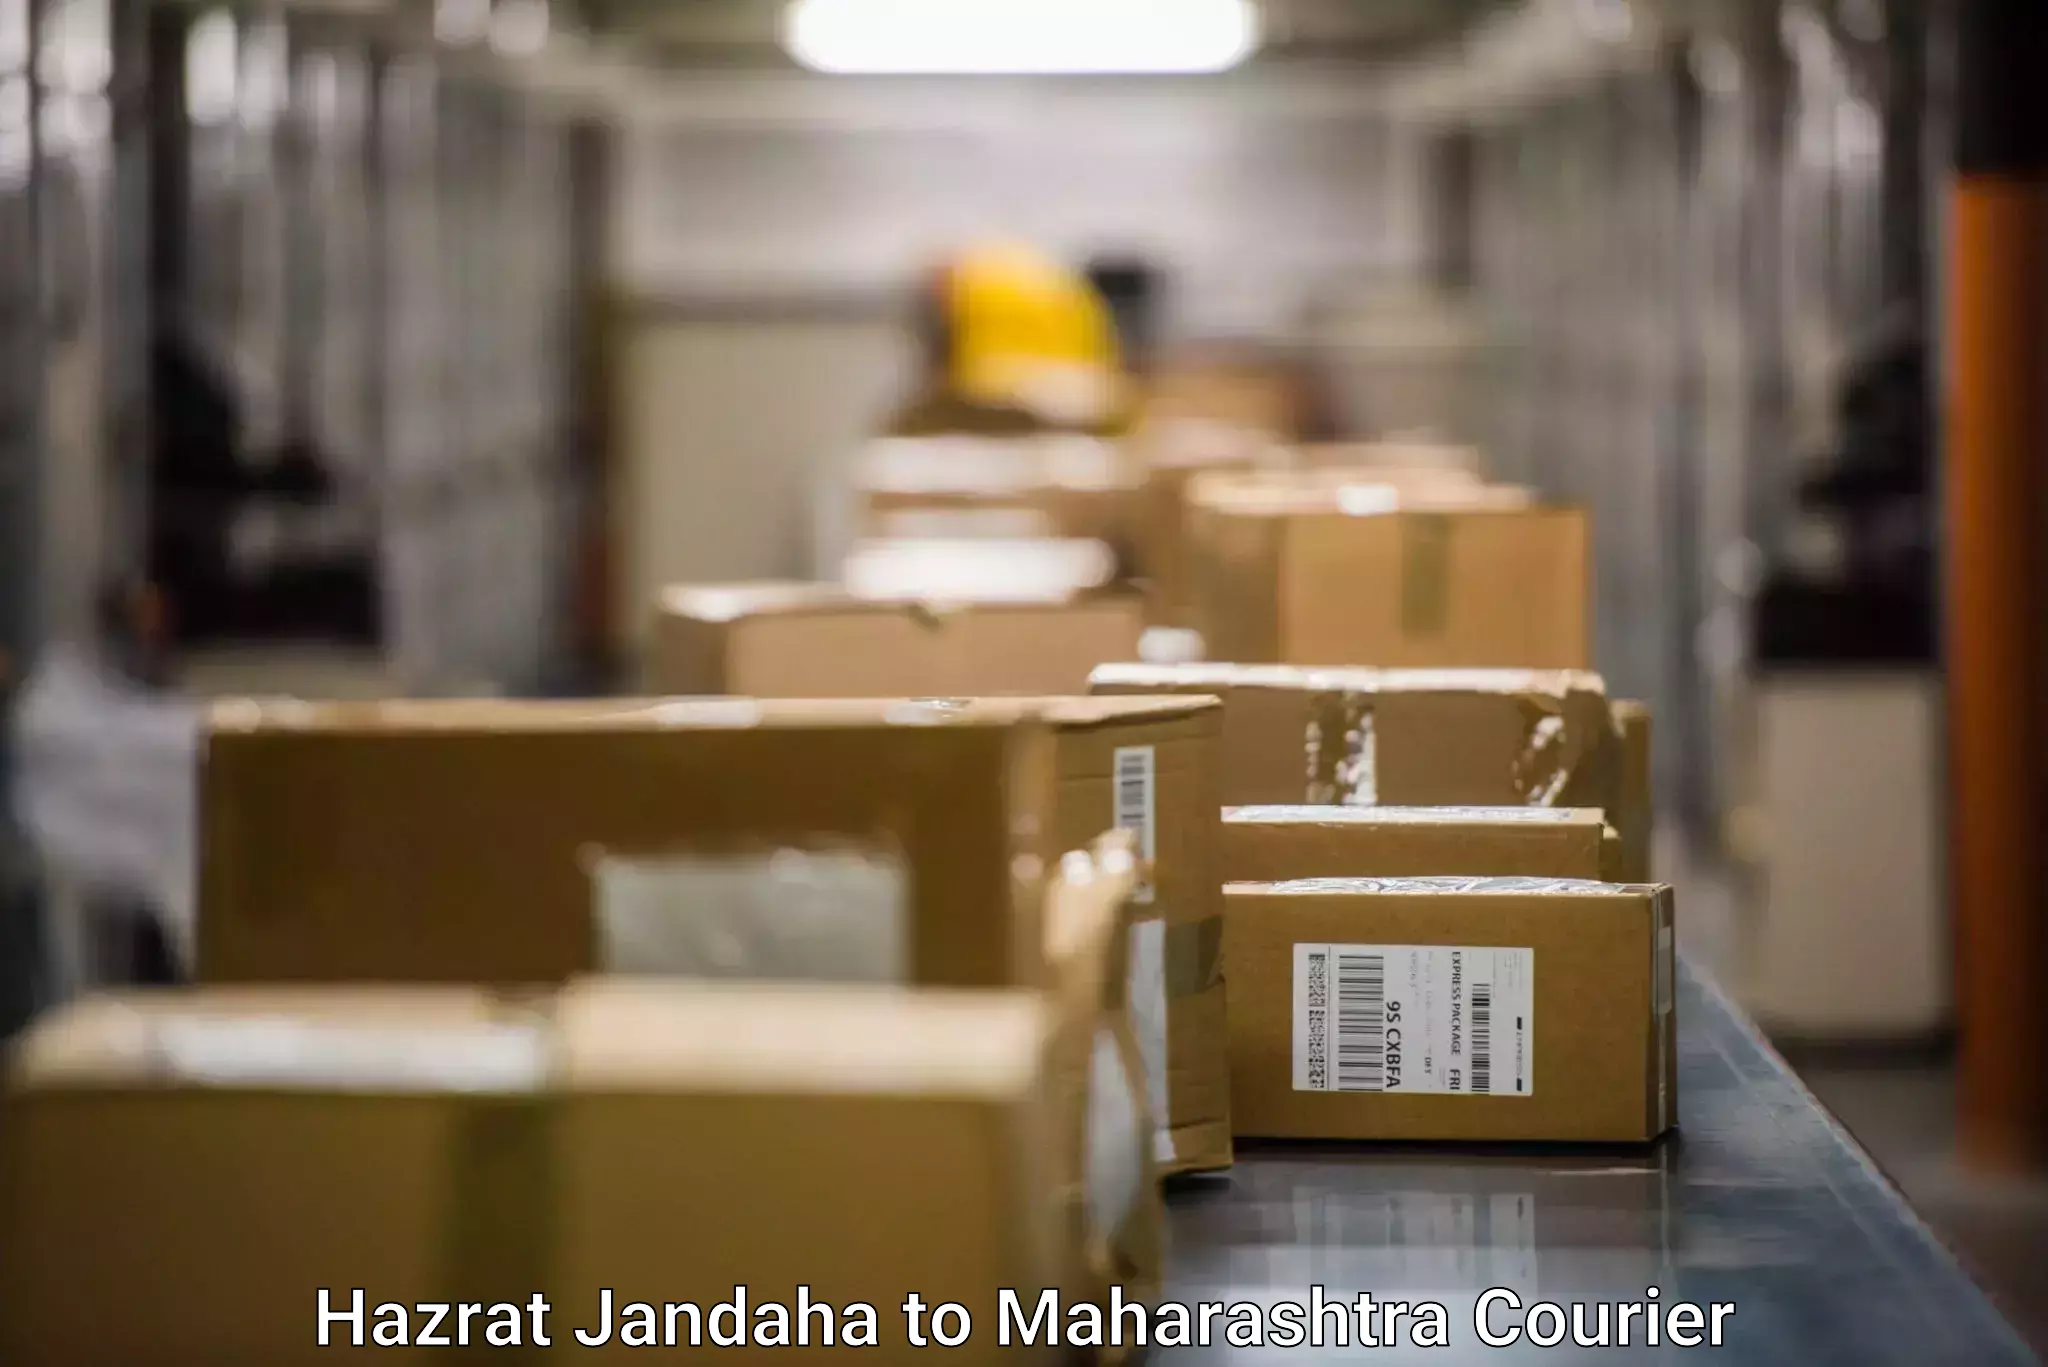 Express courier facilities Hazrat Jandaha to Raigarh Maharashtra